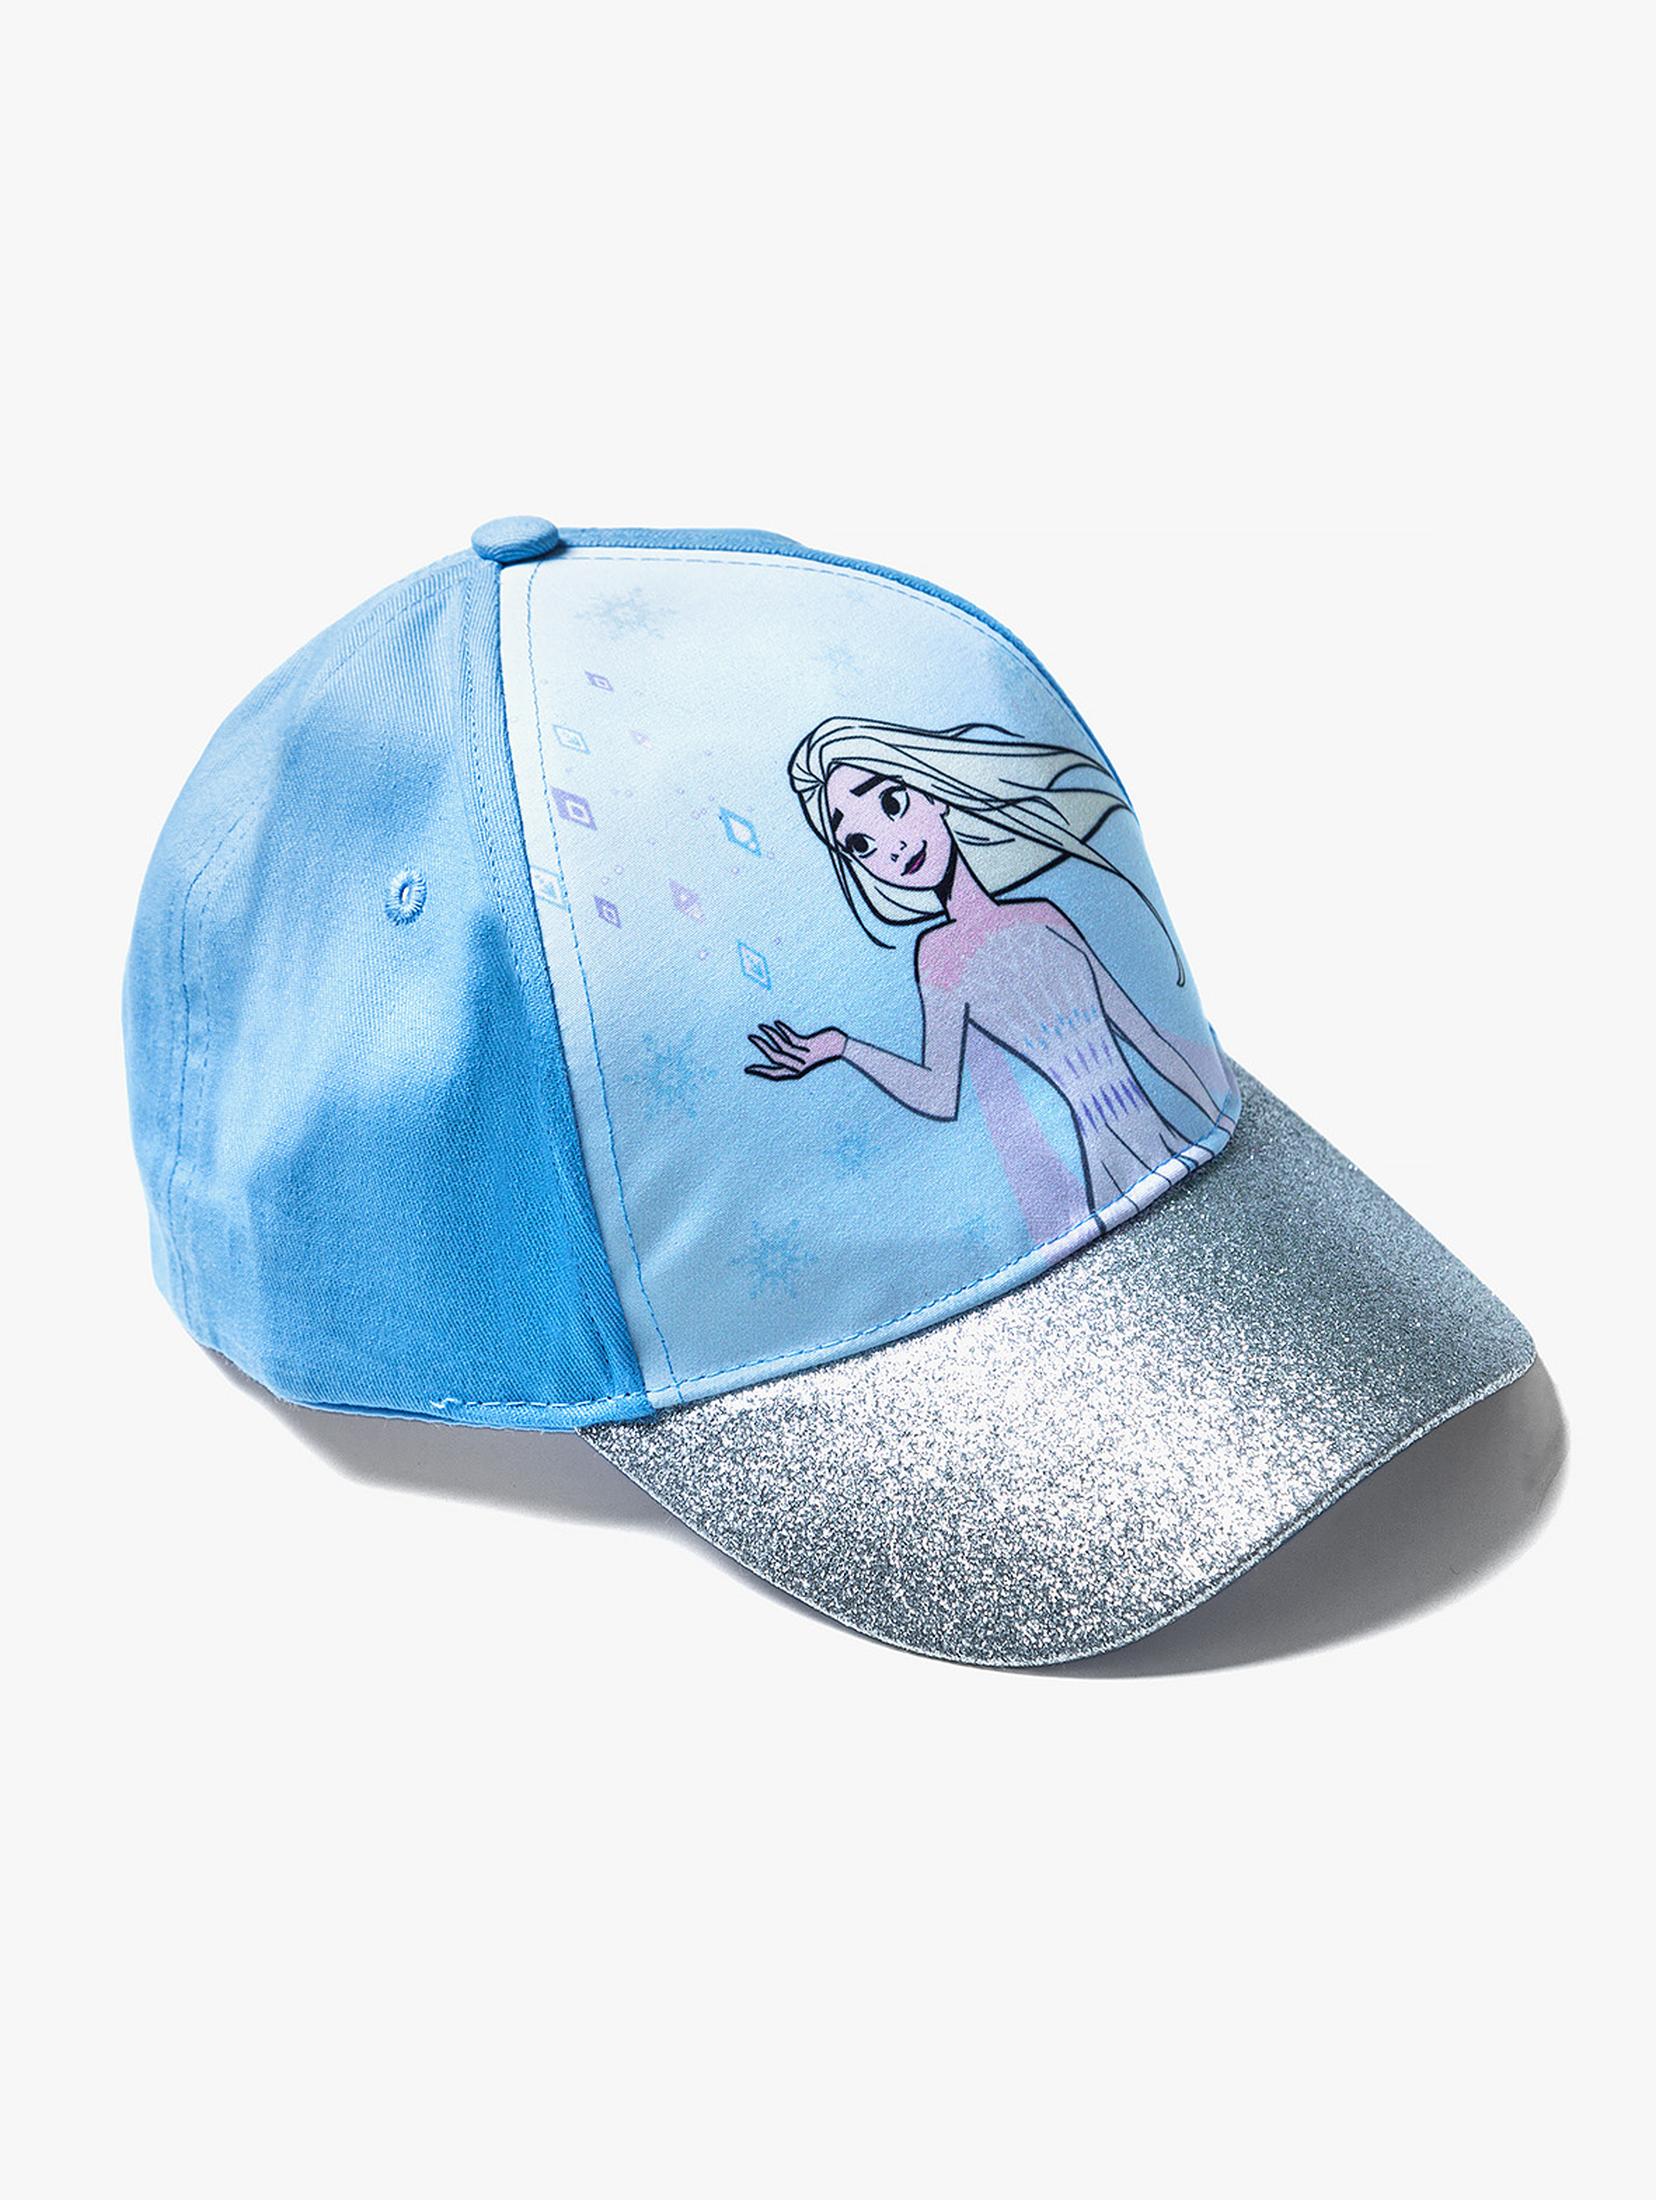 Bawełniana czapka dziewczęca z daszkiem Frozen - niebieska